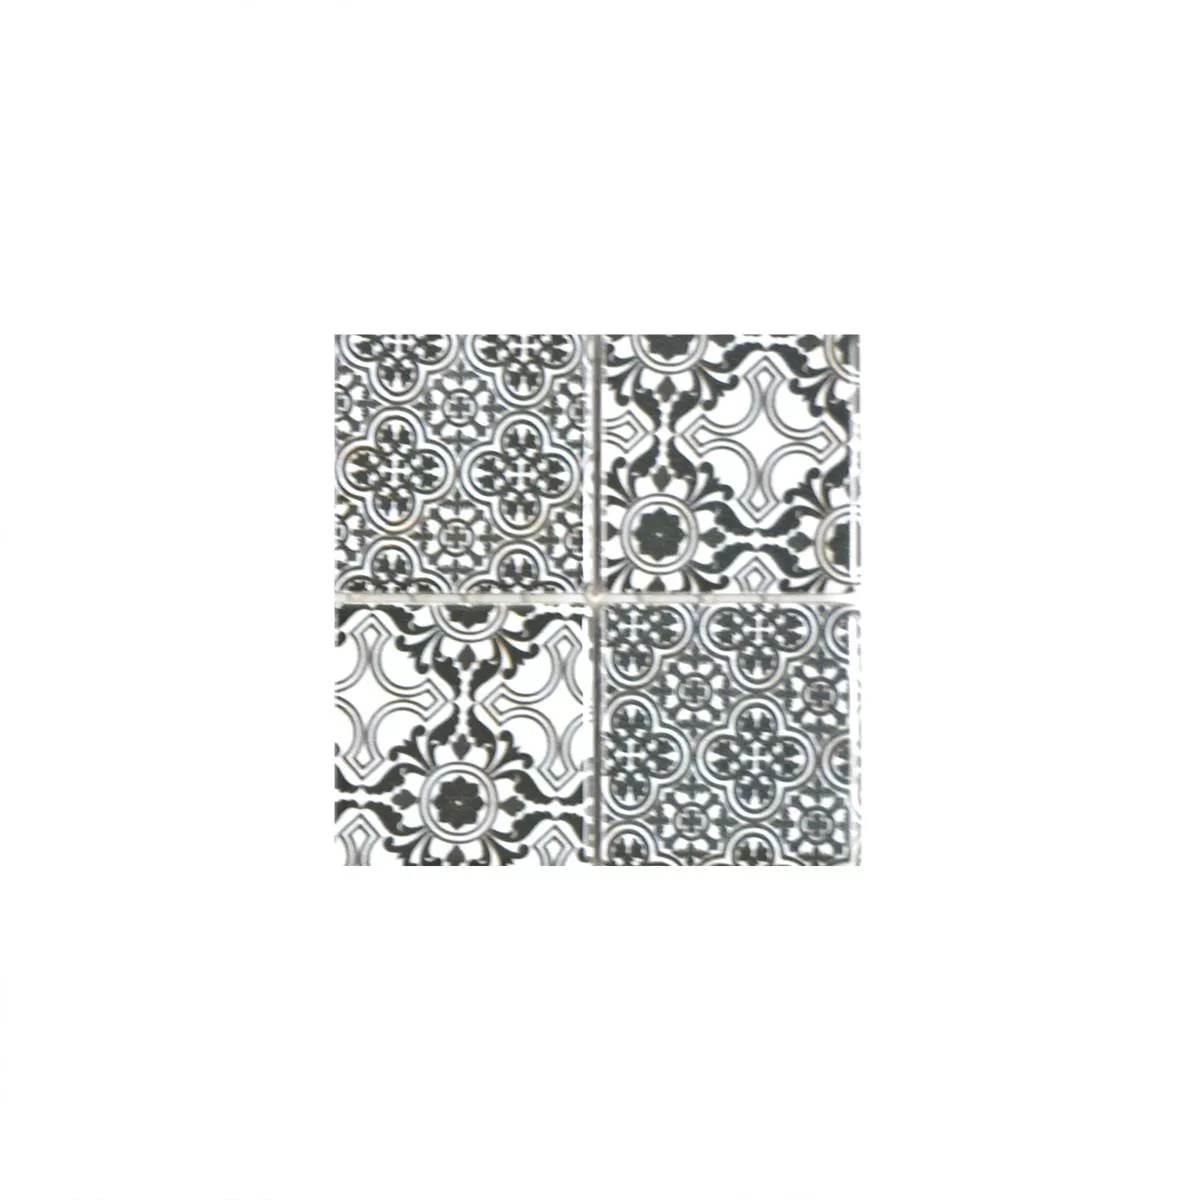 Vzorek Keramika Mozaiková Dlaždice Daymion Retro Vzhled Čtverec Černá